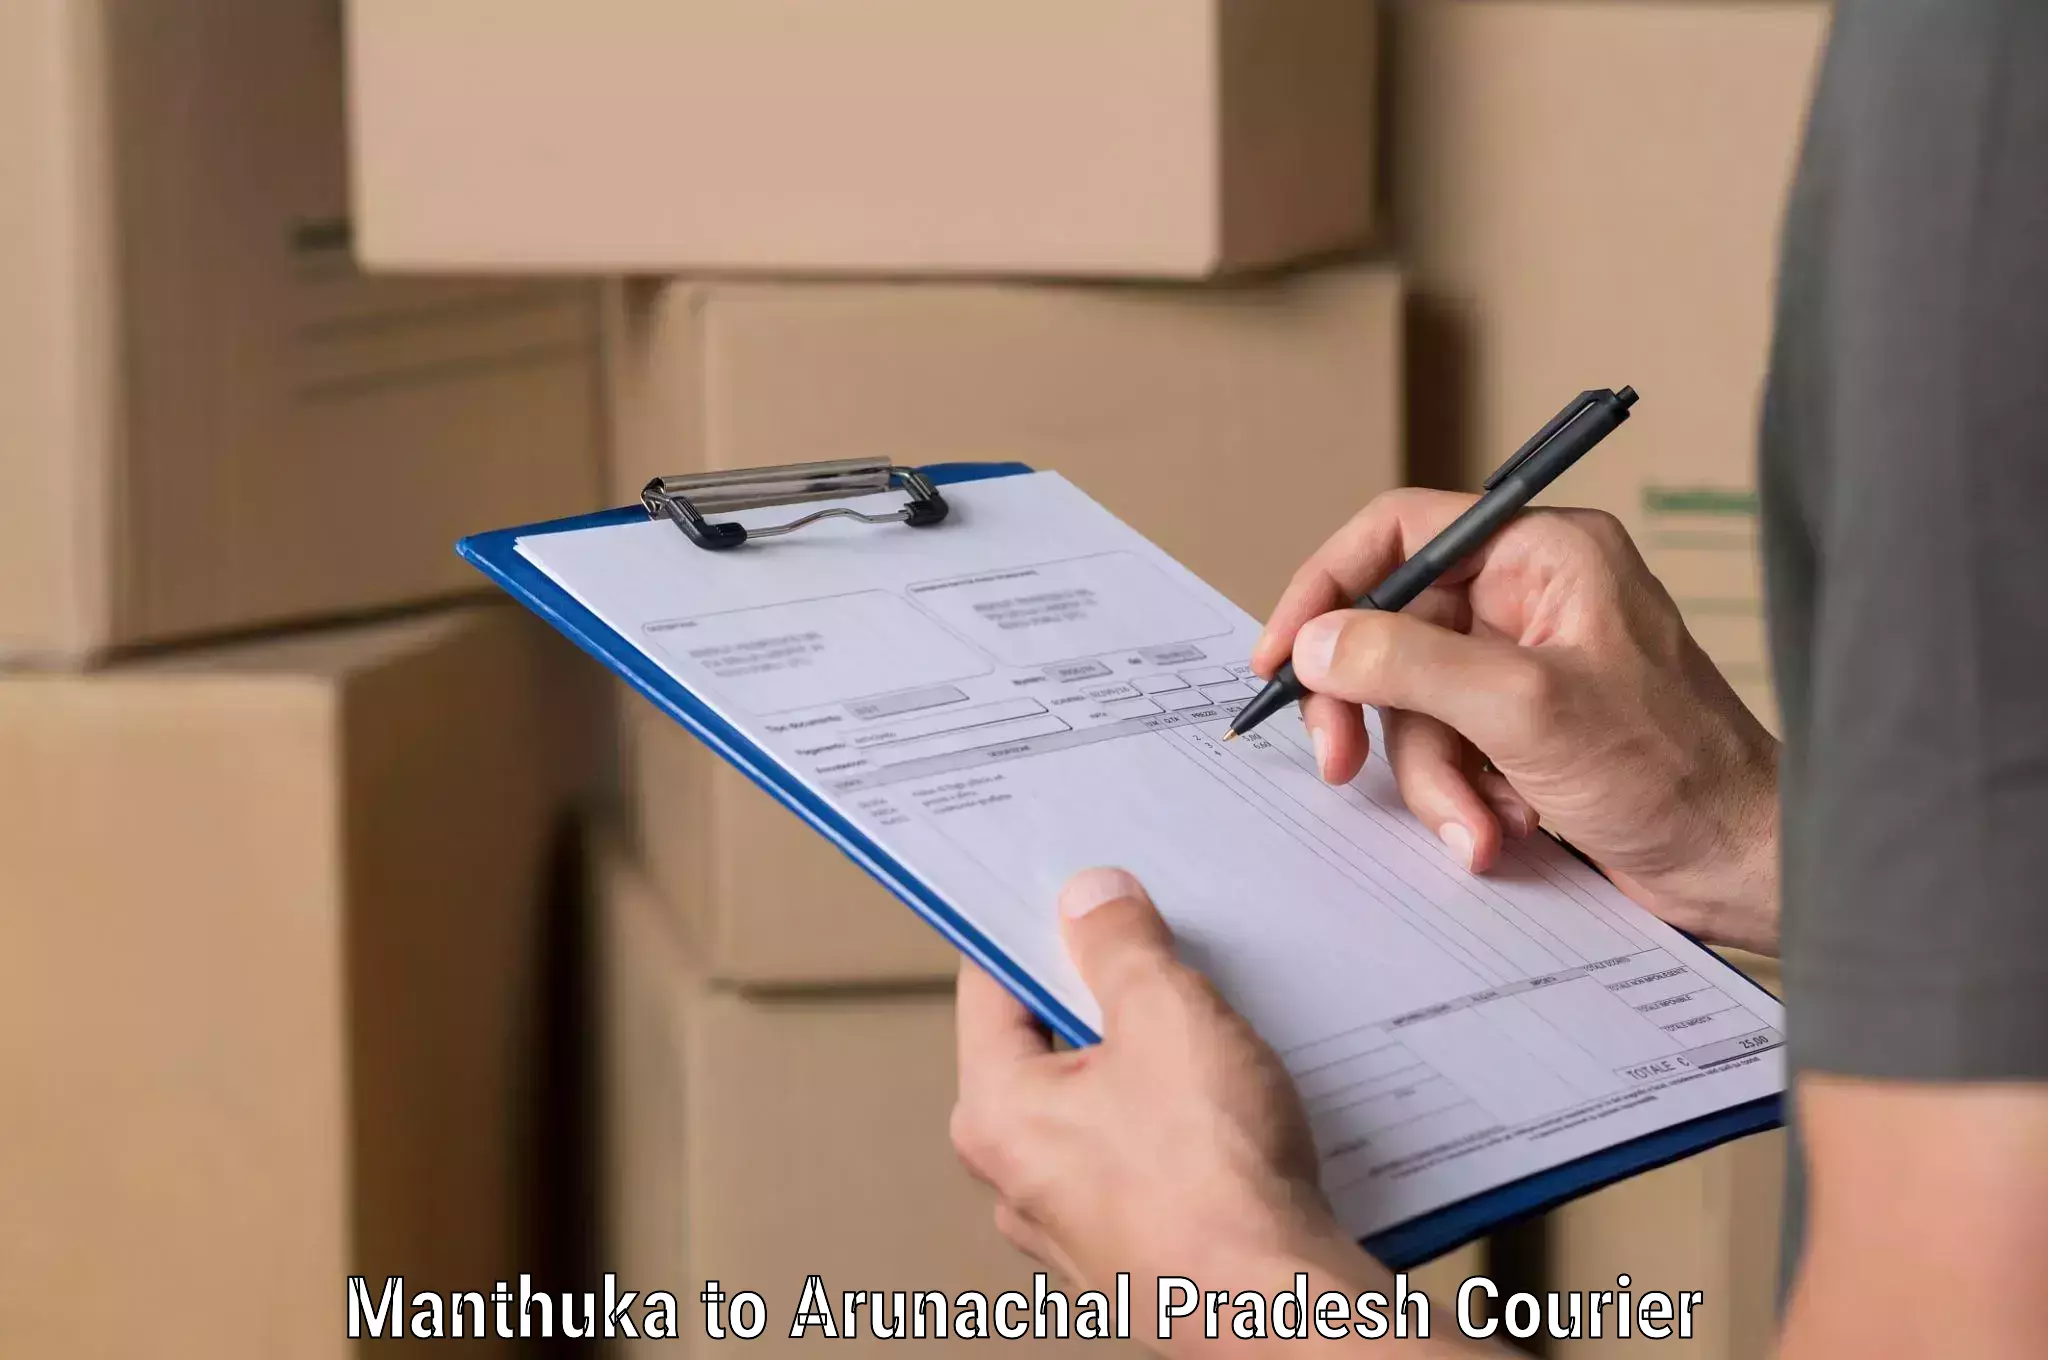 Quick courier services Manthuka to Arunachal Pradesh